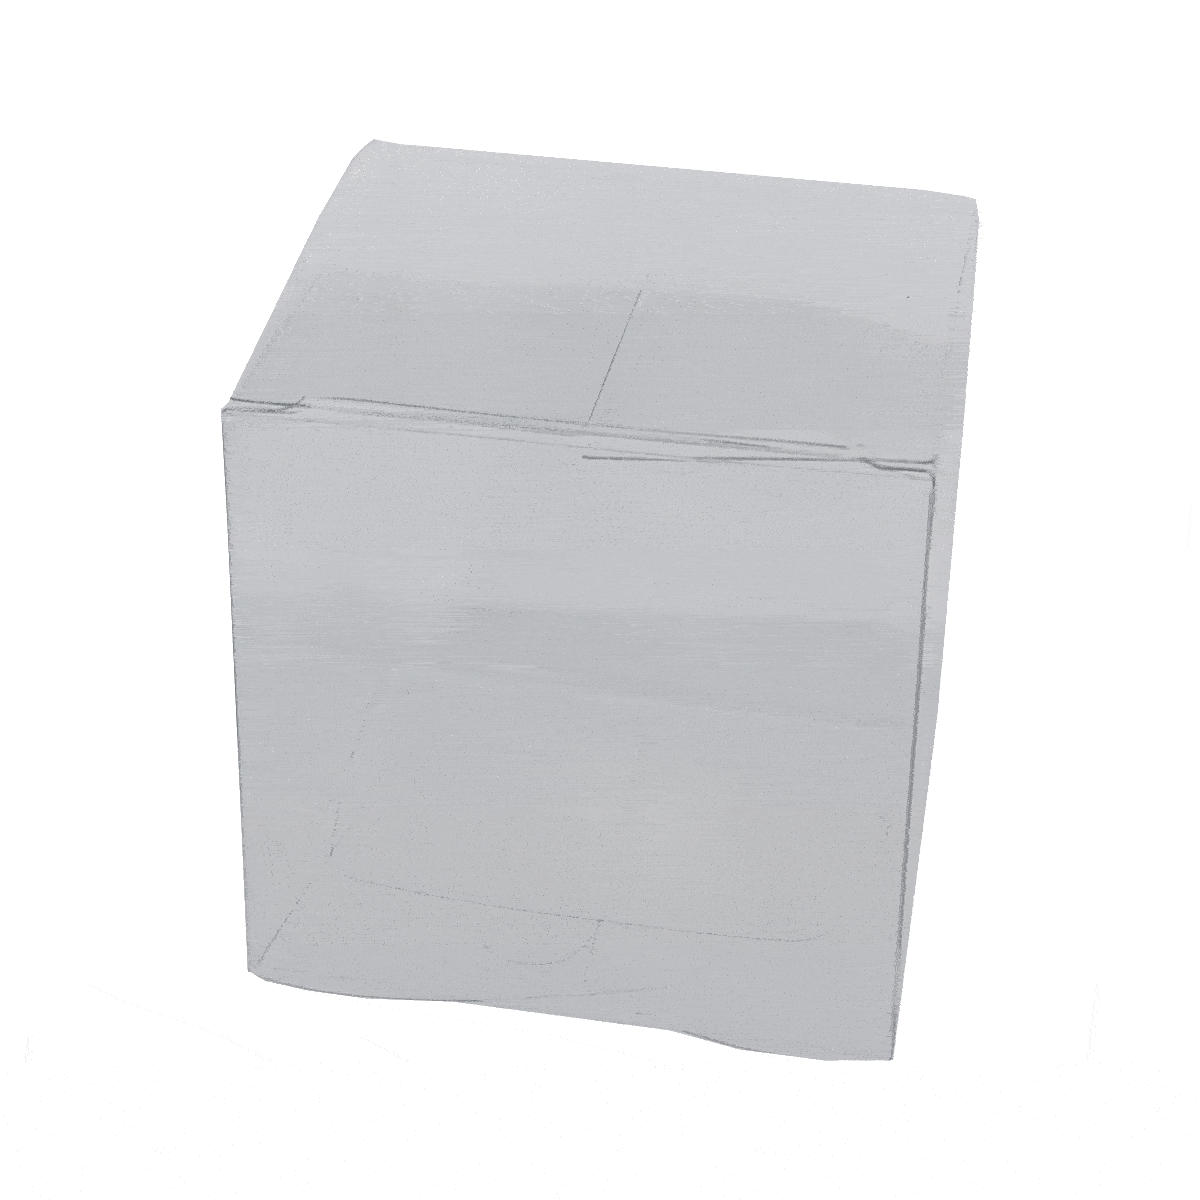 Acetate (PVC) Medium Cube #7 (70x70x70mm)